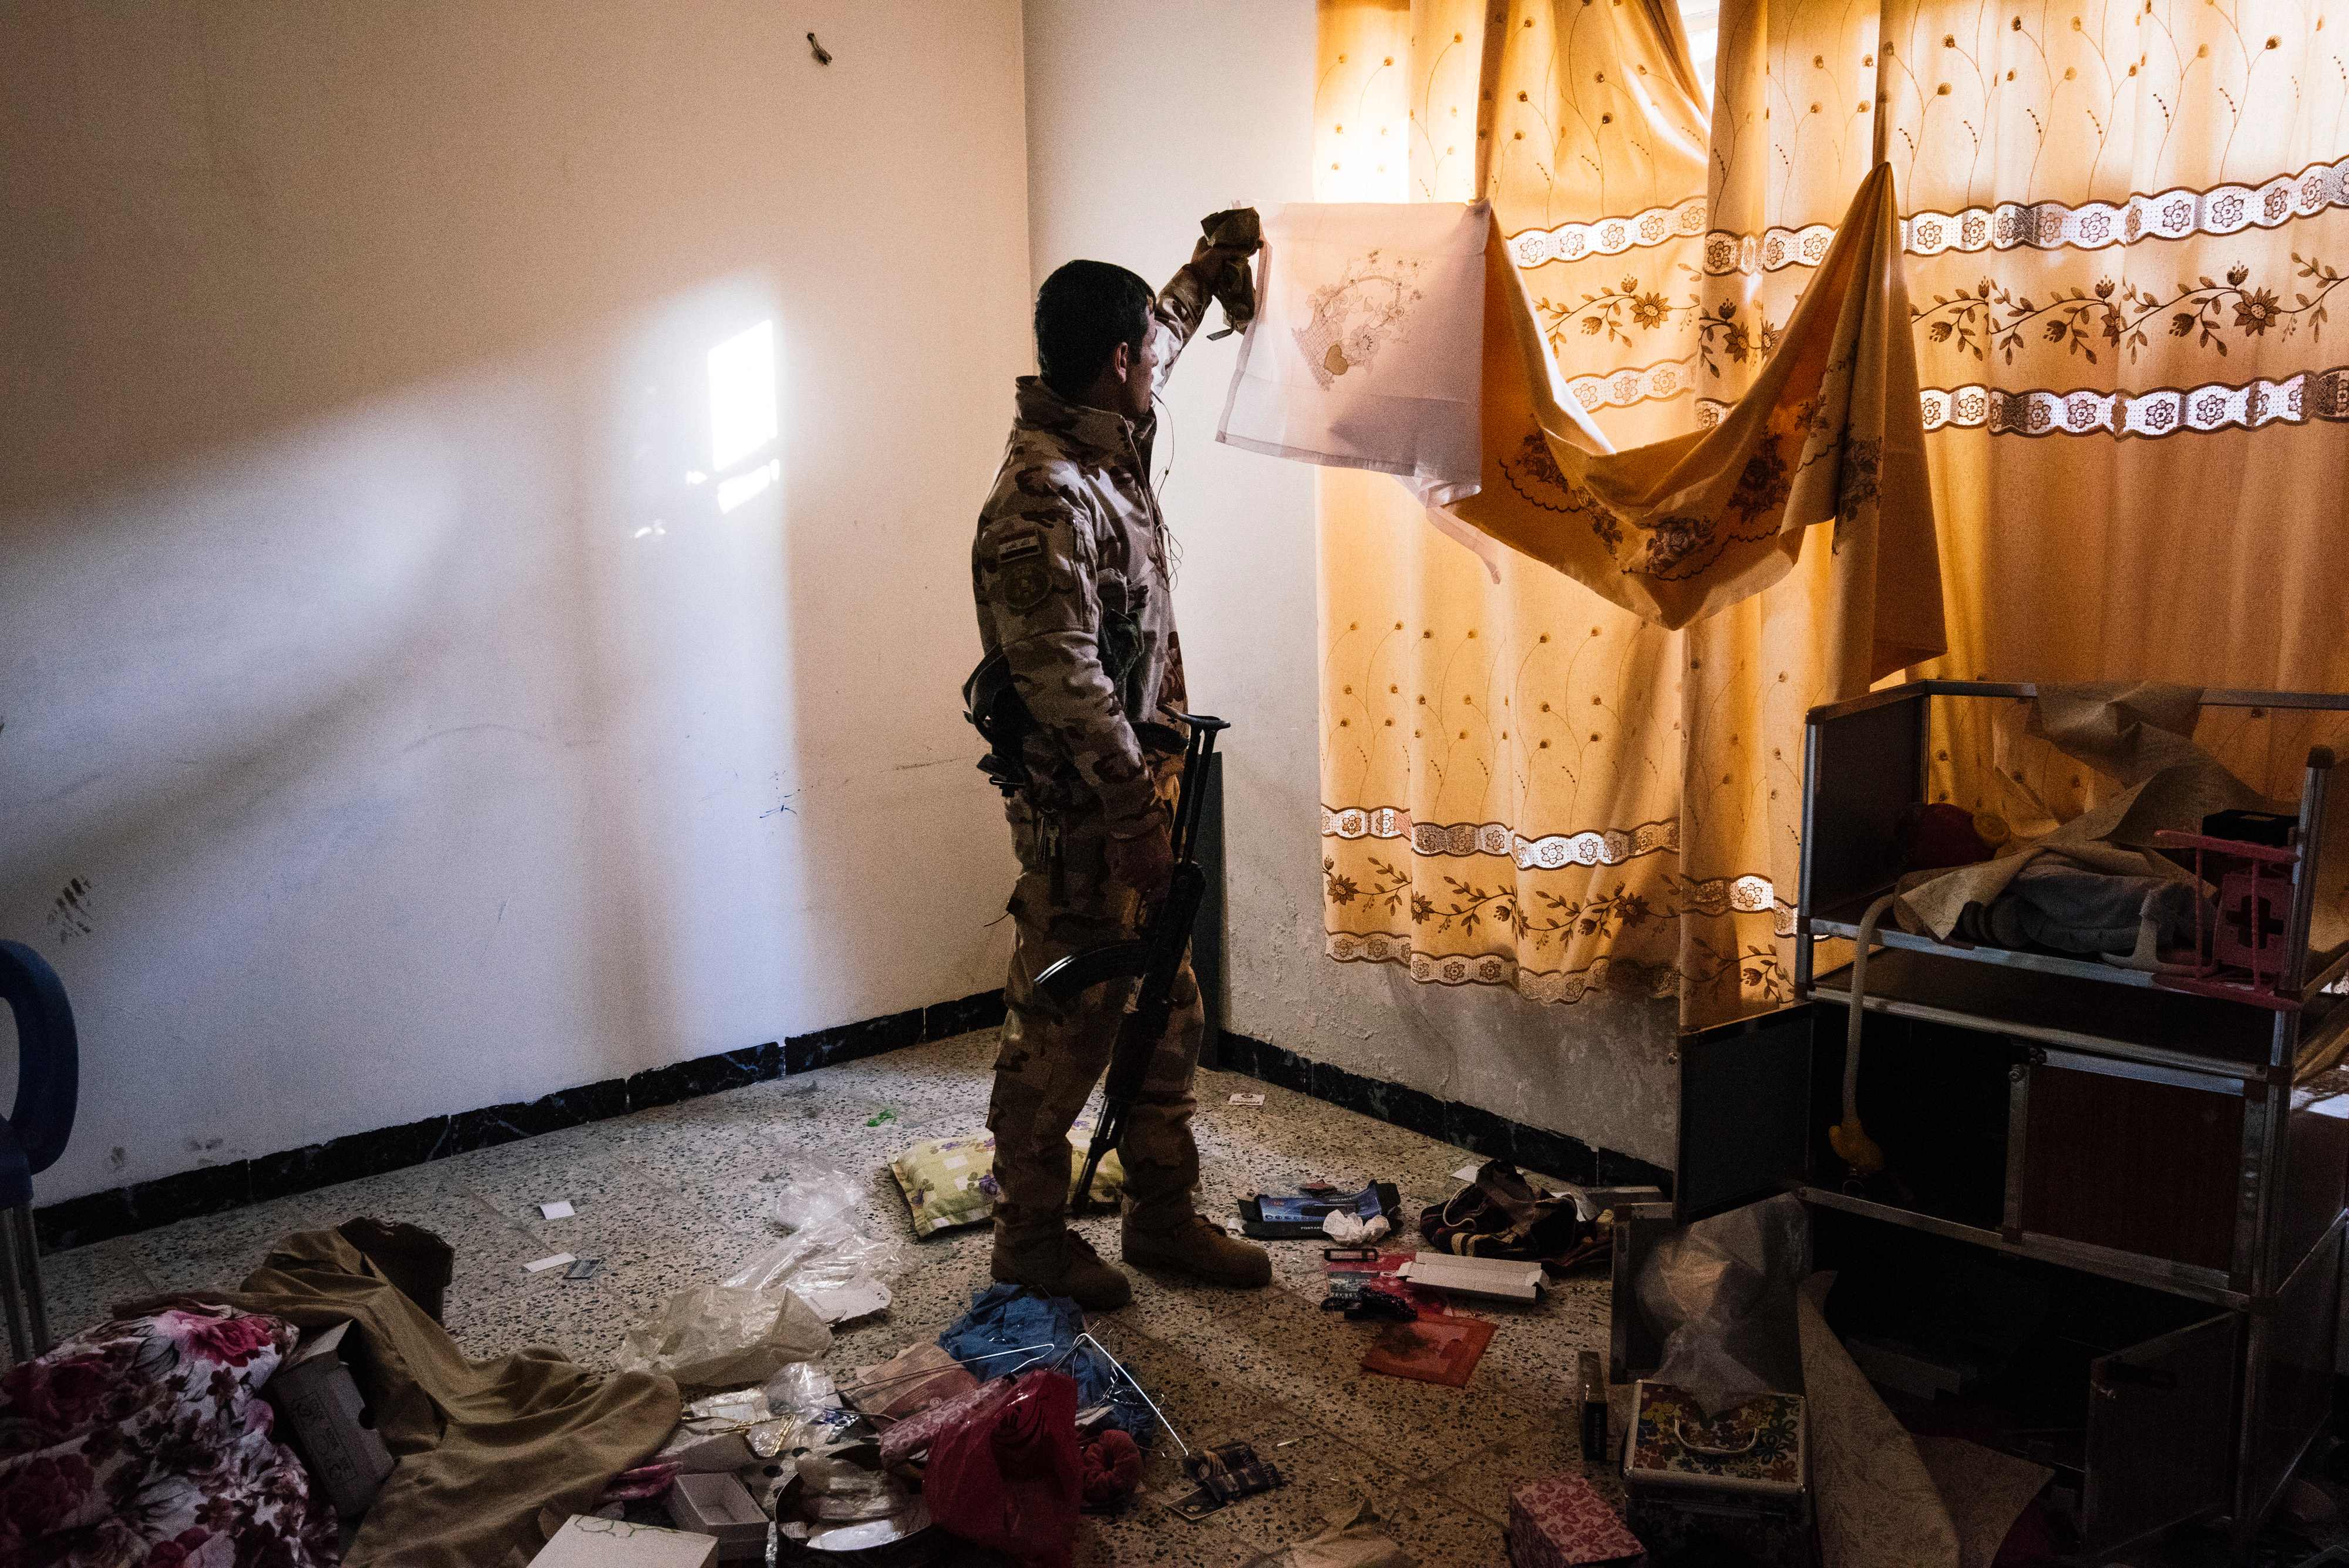 أحد عناصر الجيش العراقى يتفقد منزل كان يتحصن به المسلحين